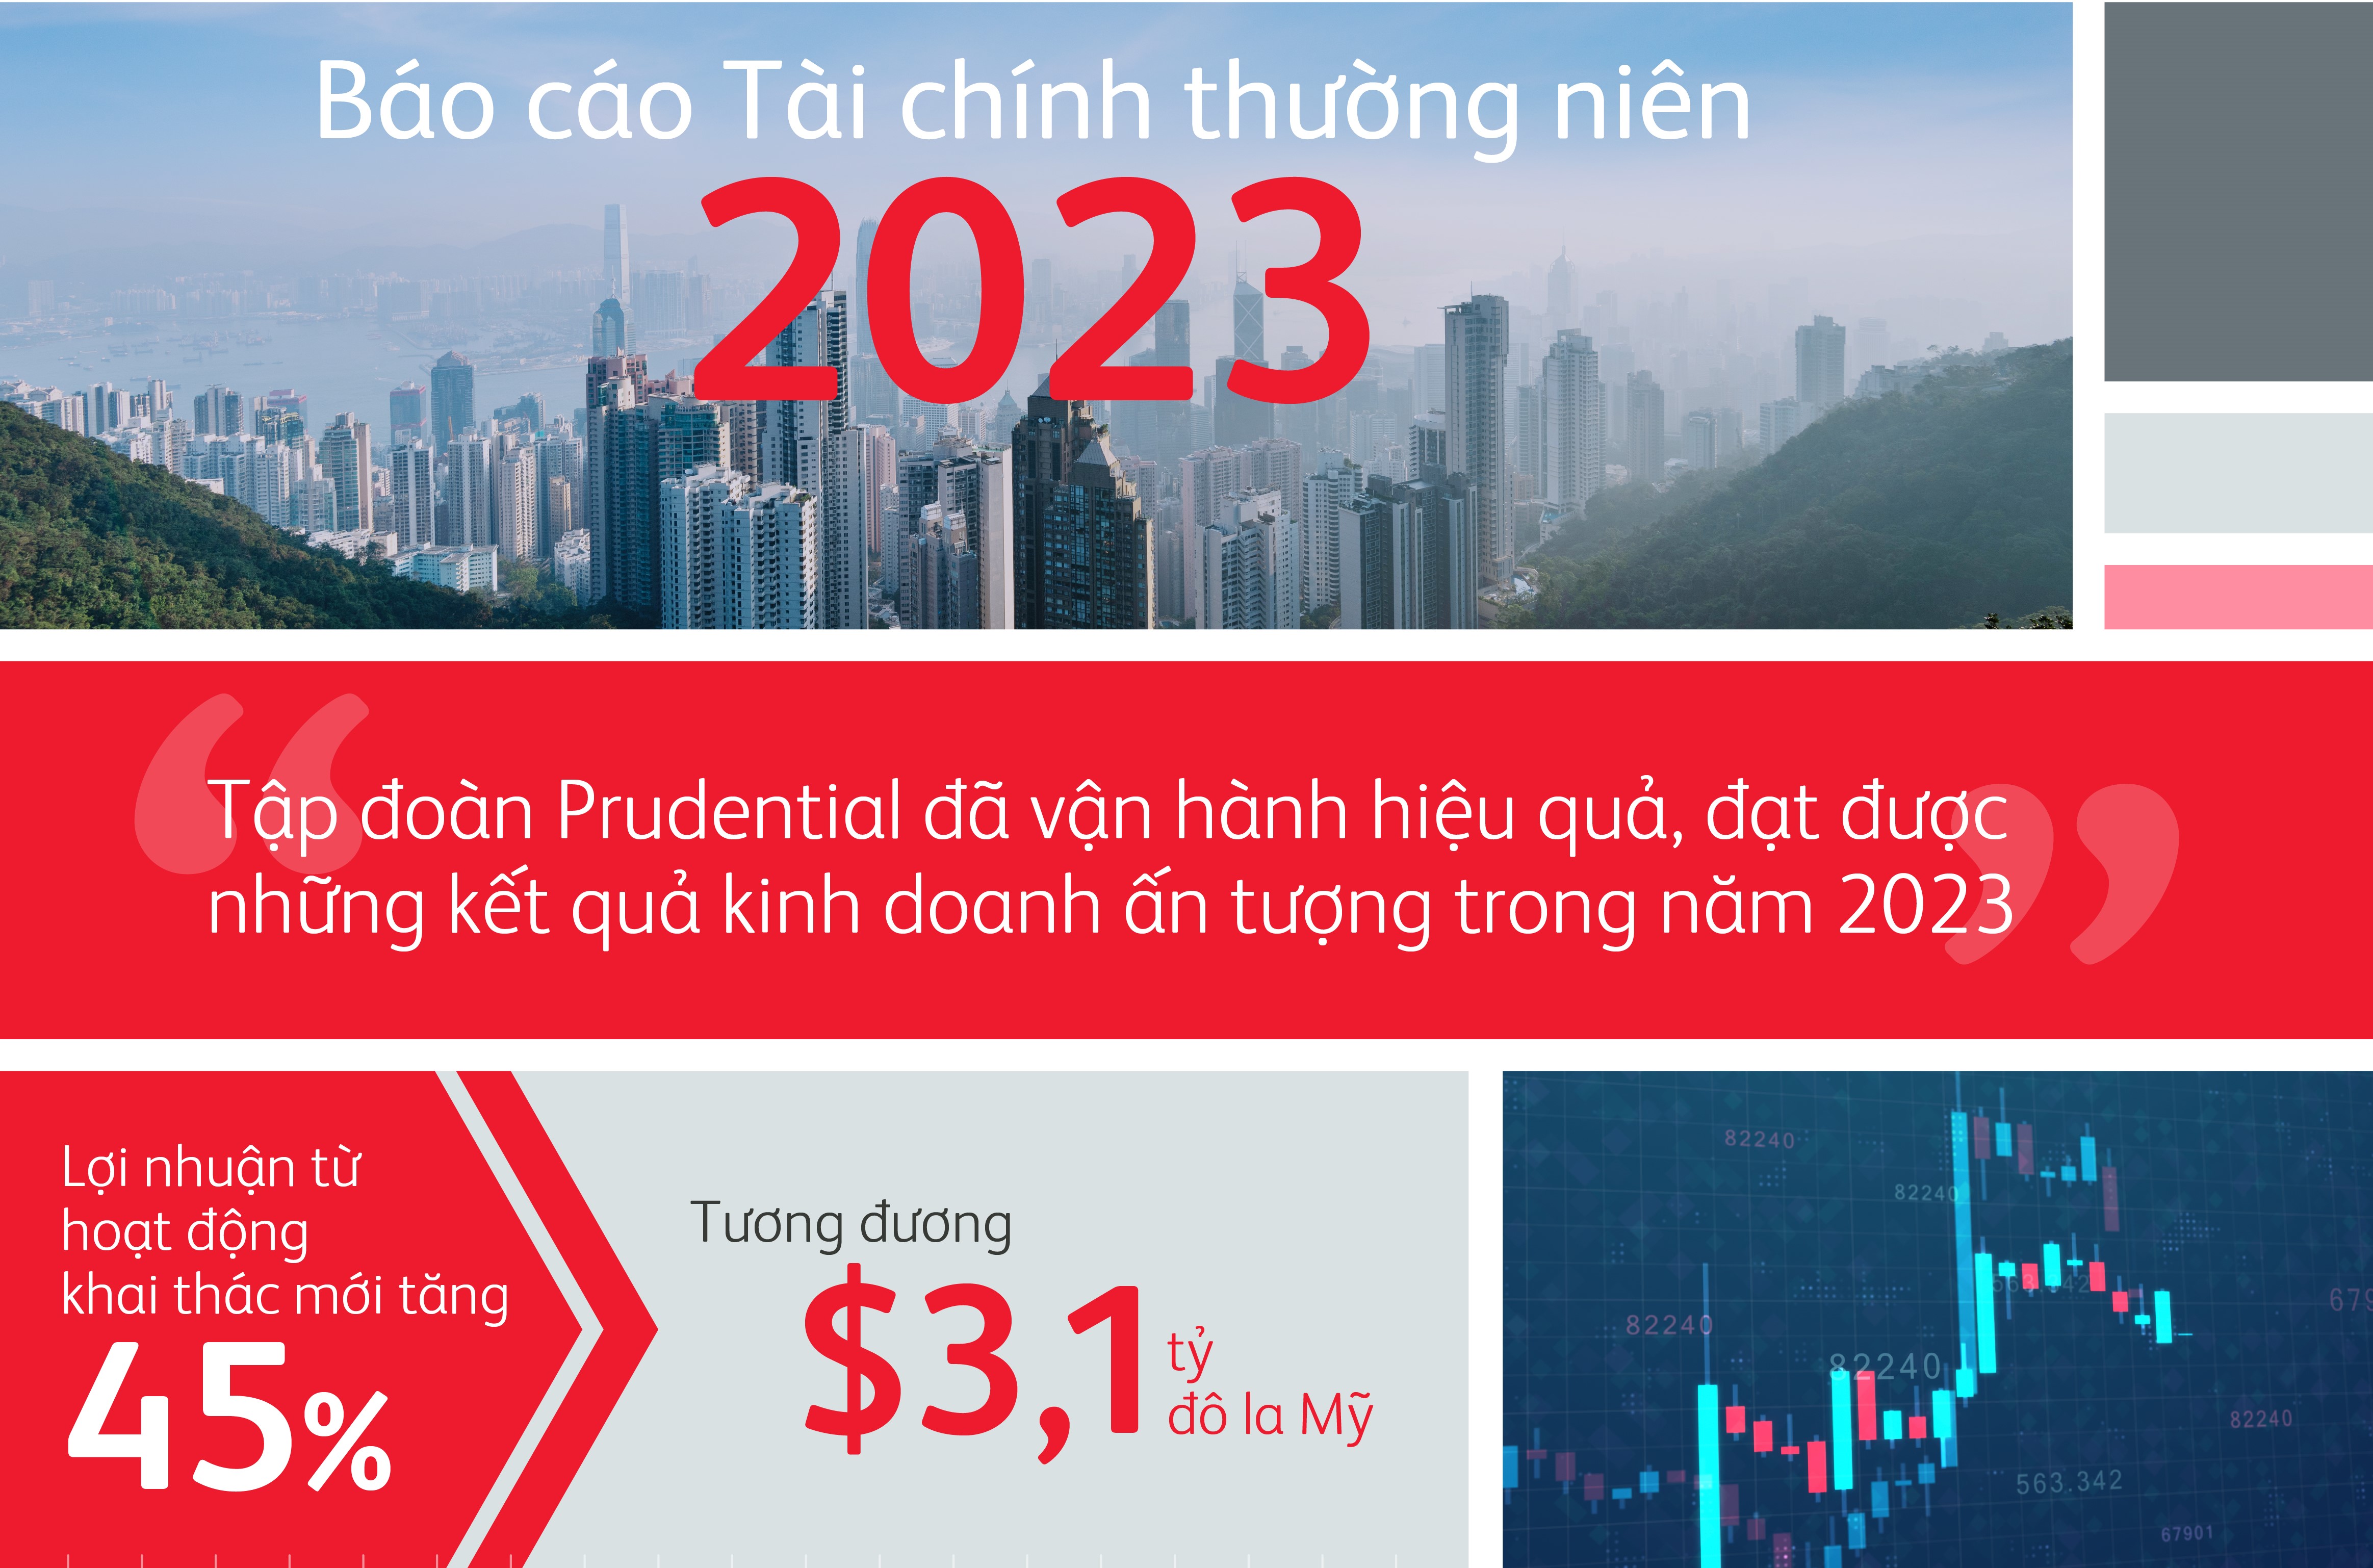 Tập đoàn Prudential công bố Báo cáo Tài chính thường niên năm 2023 – Tiếp tục tăng trưởng mạnh